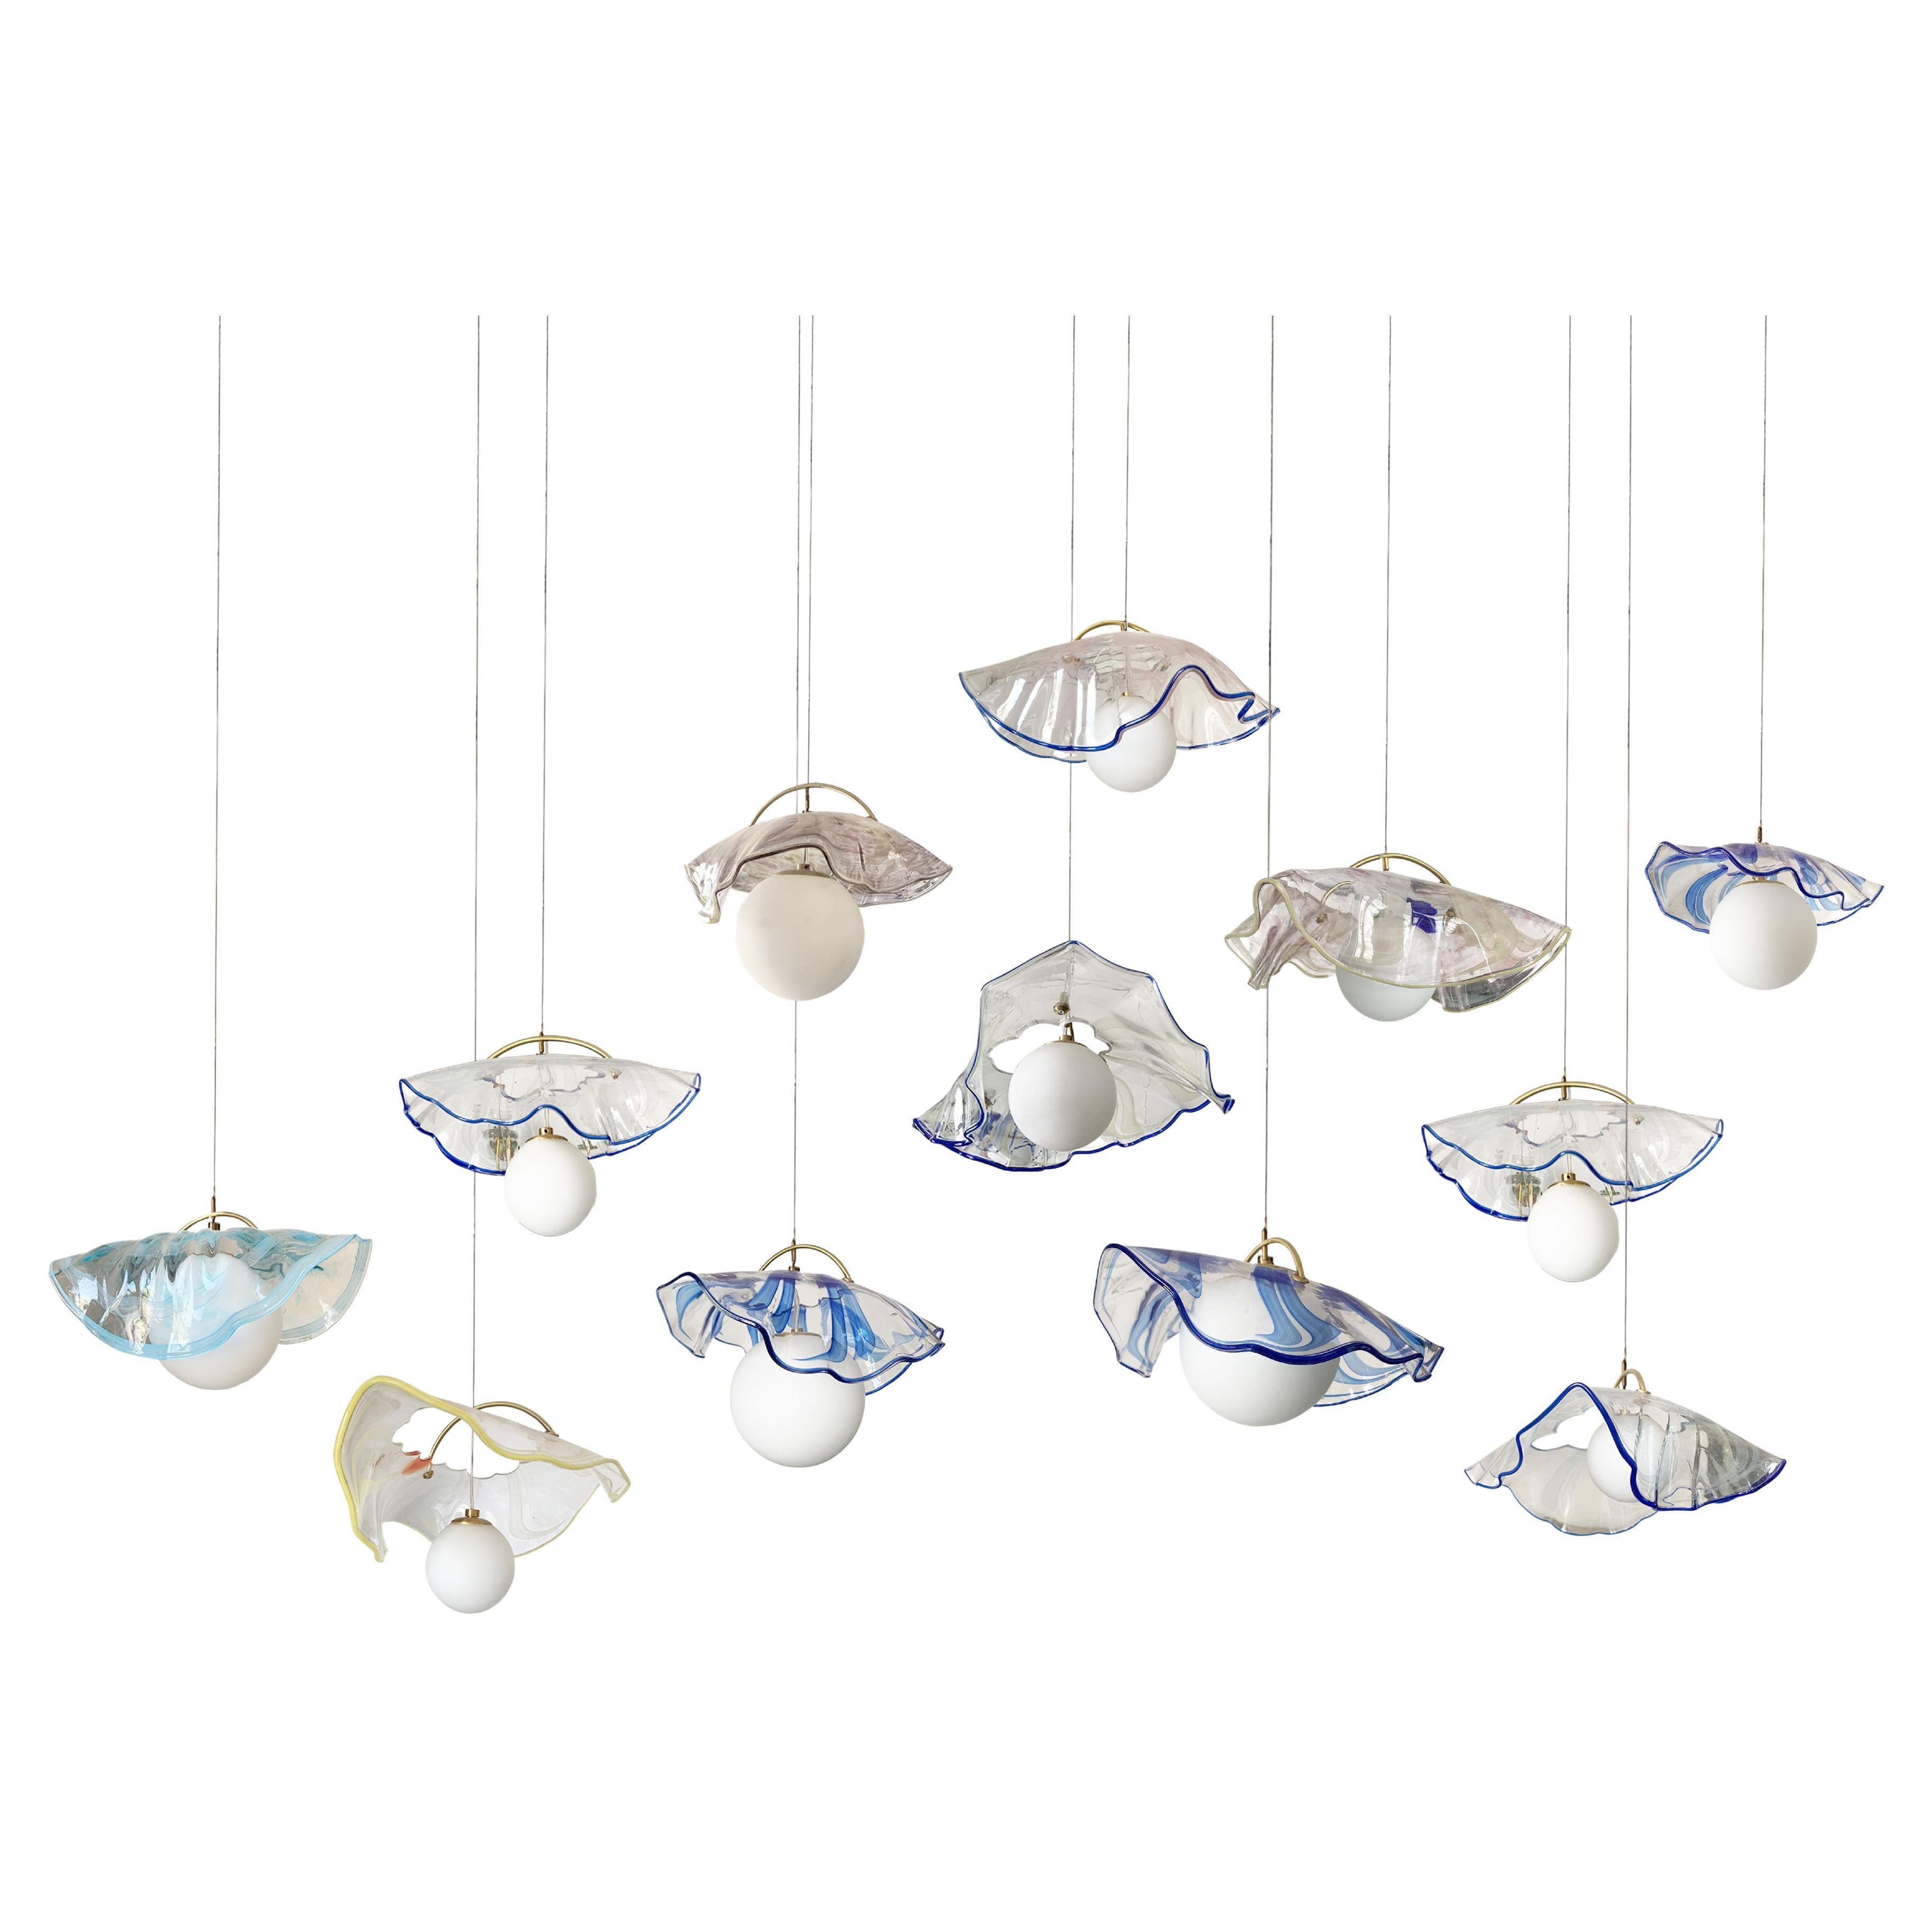 Jellyfish Pendant Lamp by Sema Topaloglu